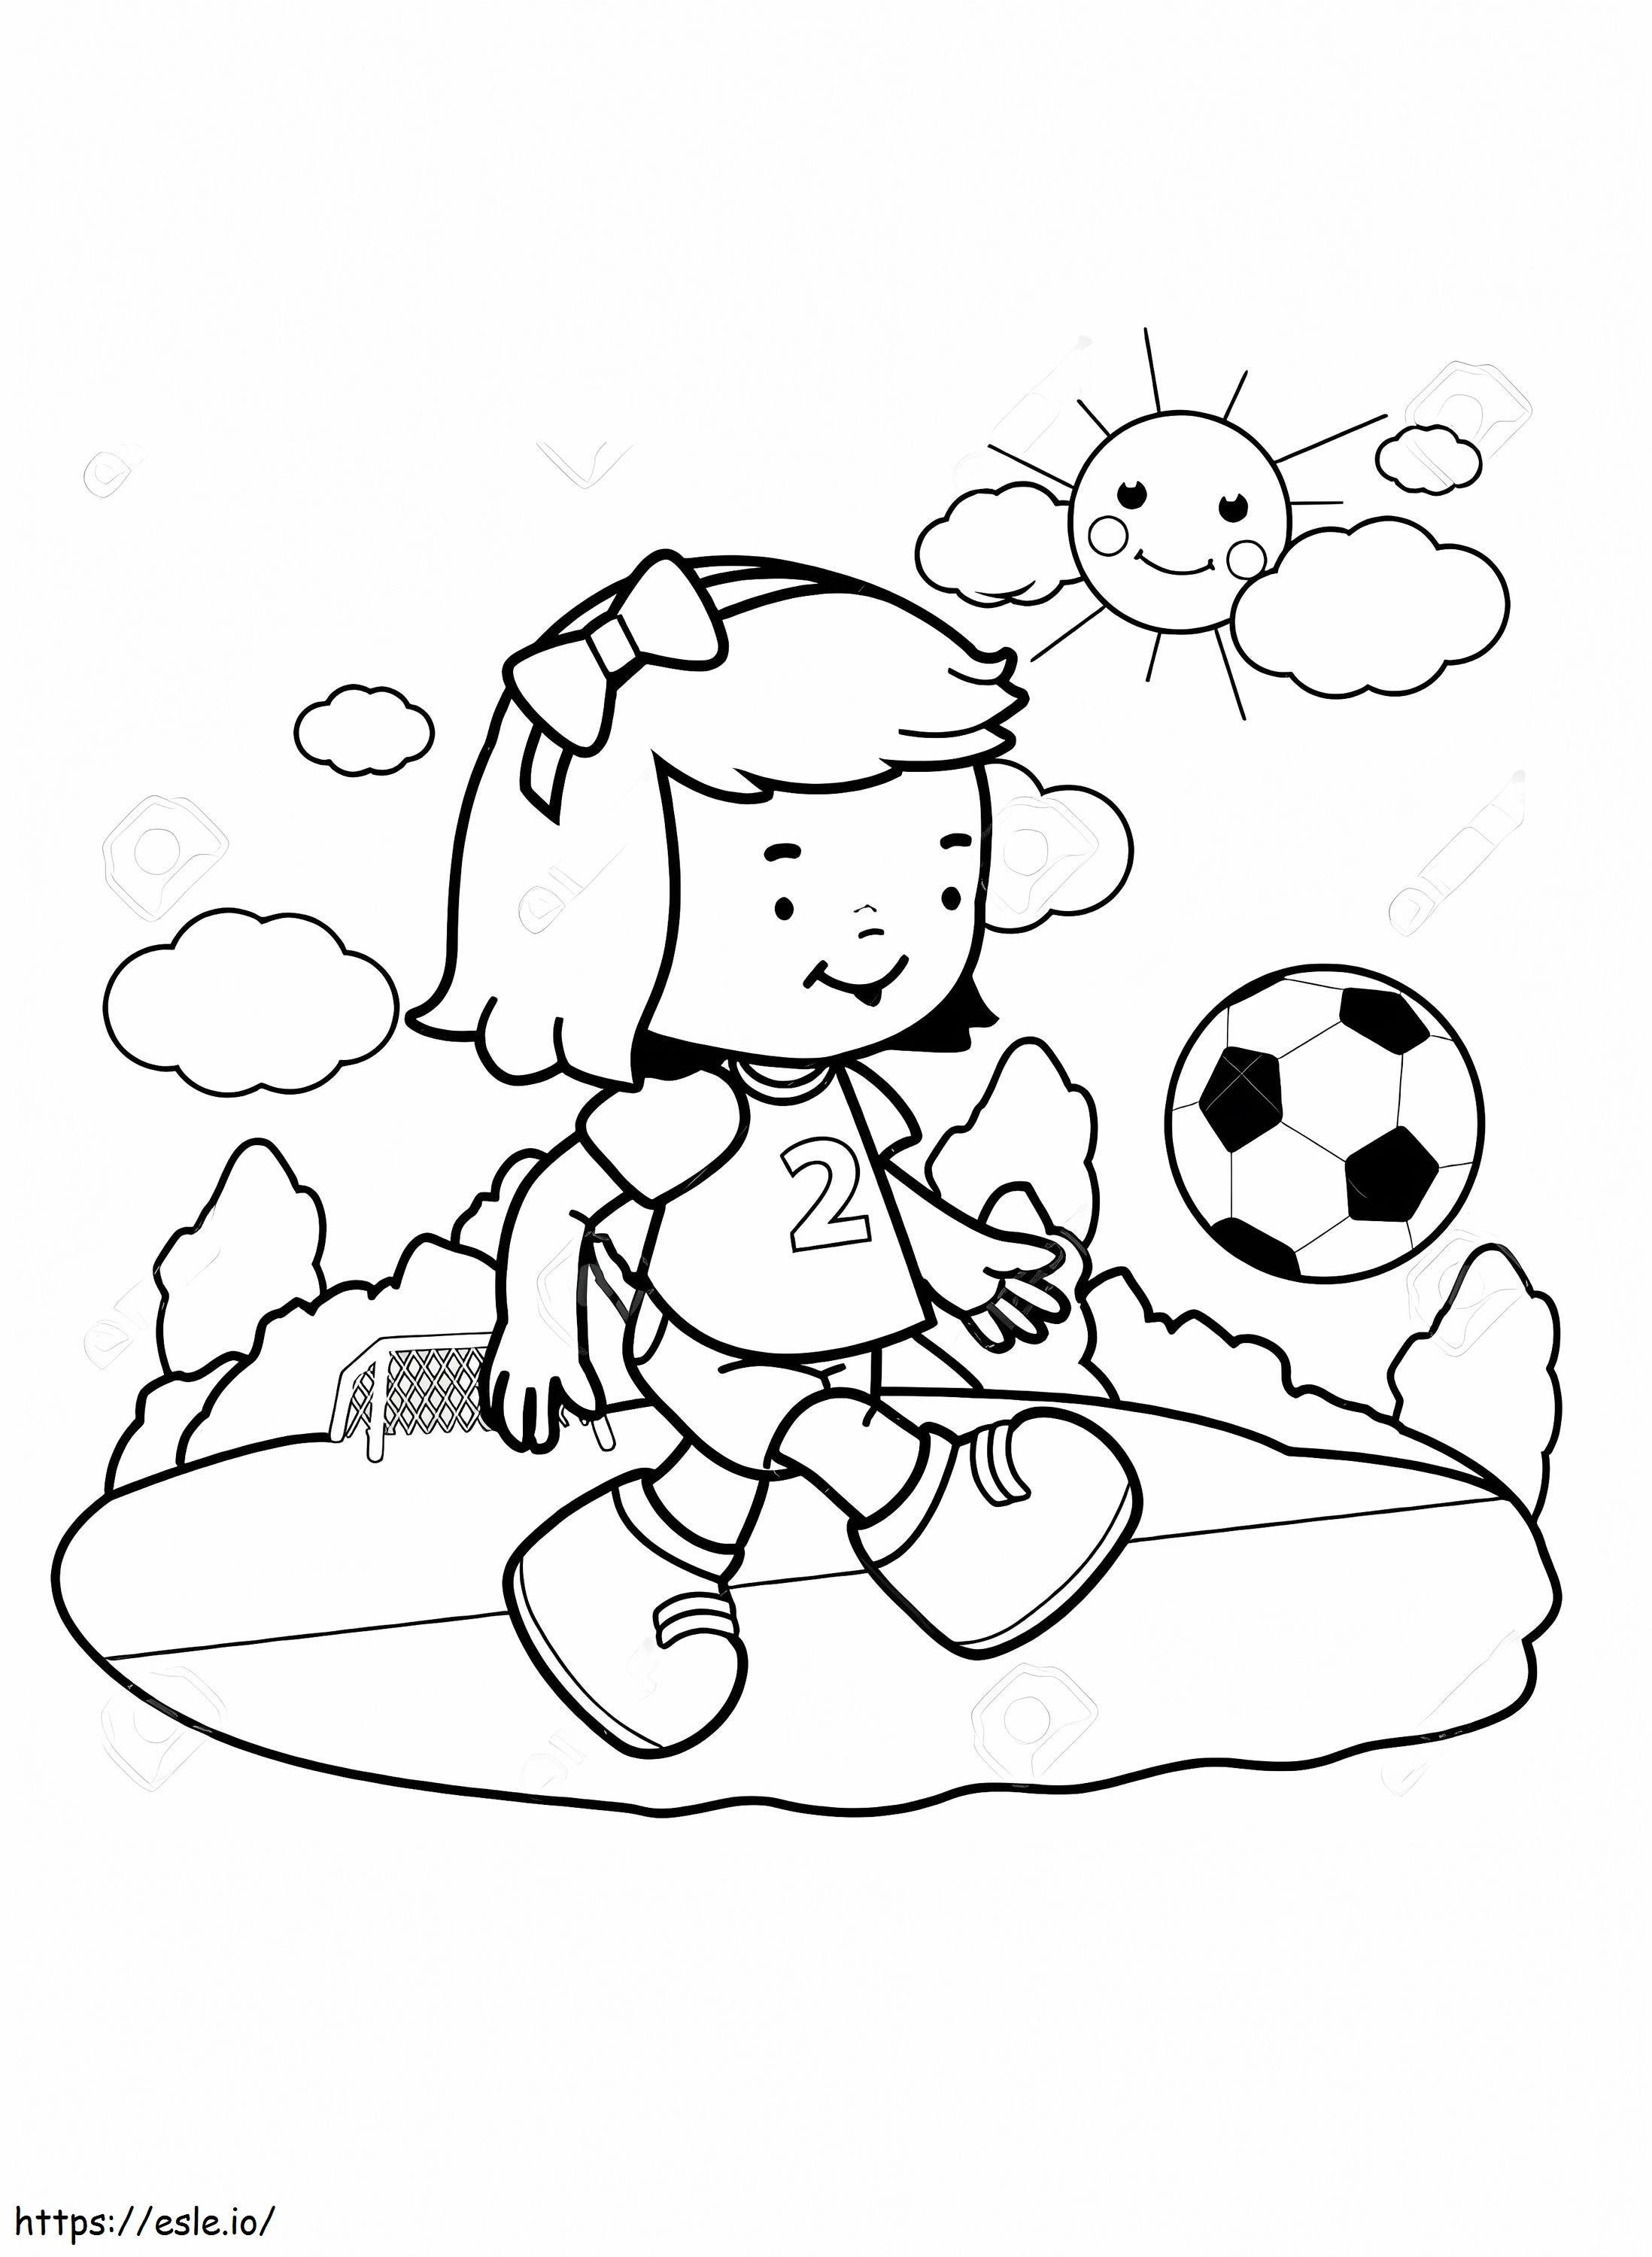 Coloriage Petite fille jouant au football à imprimer dessin